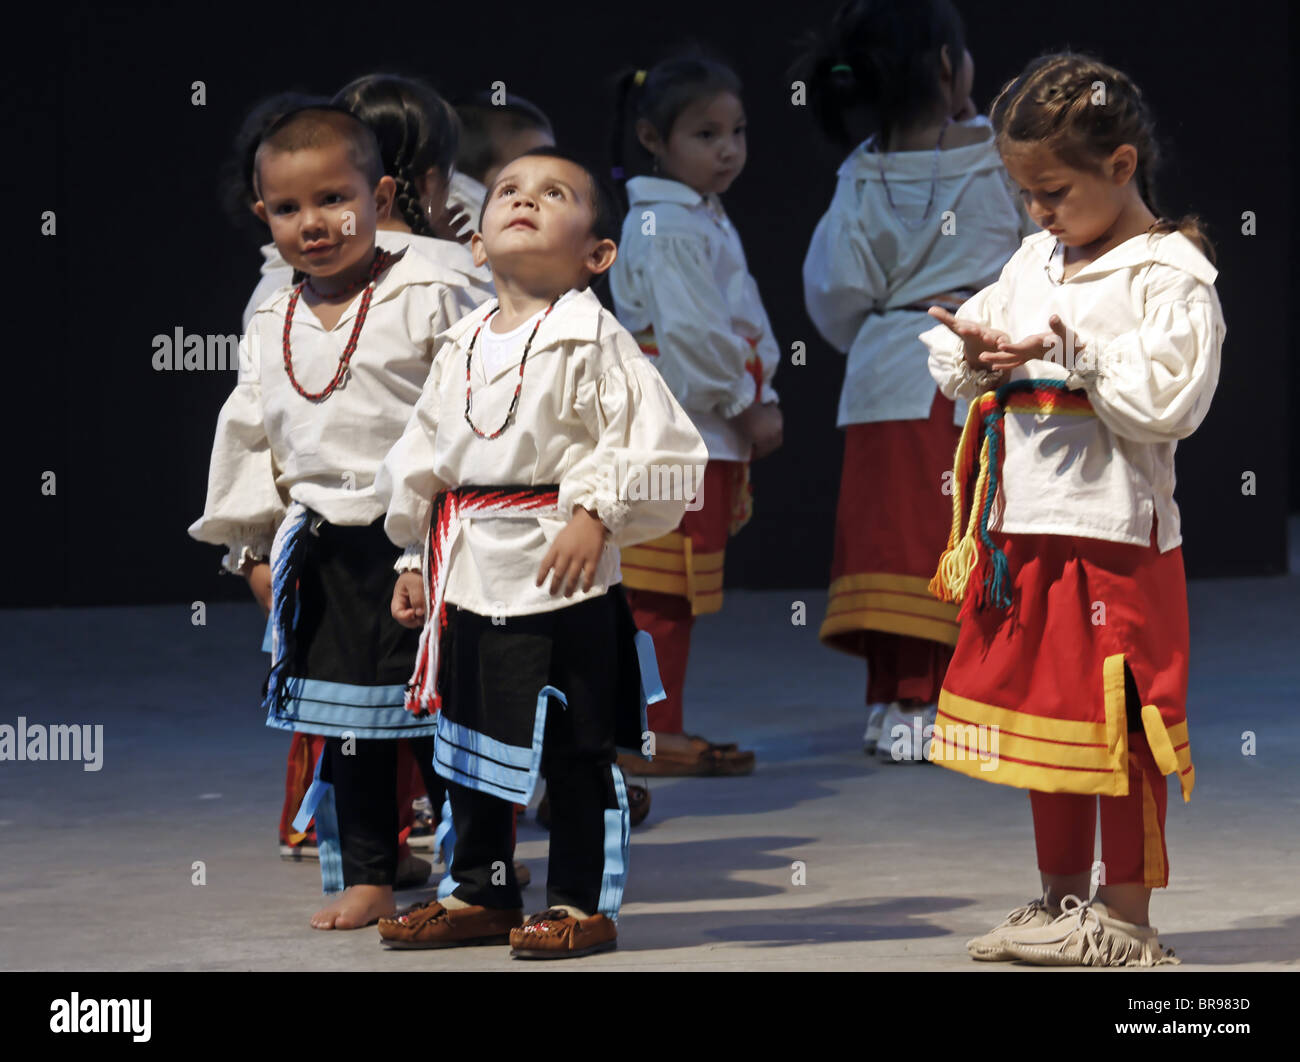 Cherokee, Carolina del Norte - Jóvenes cherokis, actuar en el escenario durante el Festival anual de las tribus del Sudeste. Foto de stock